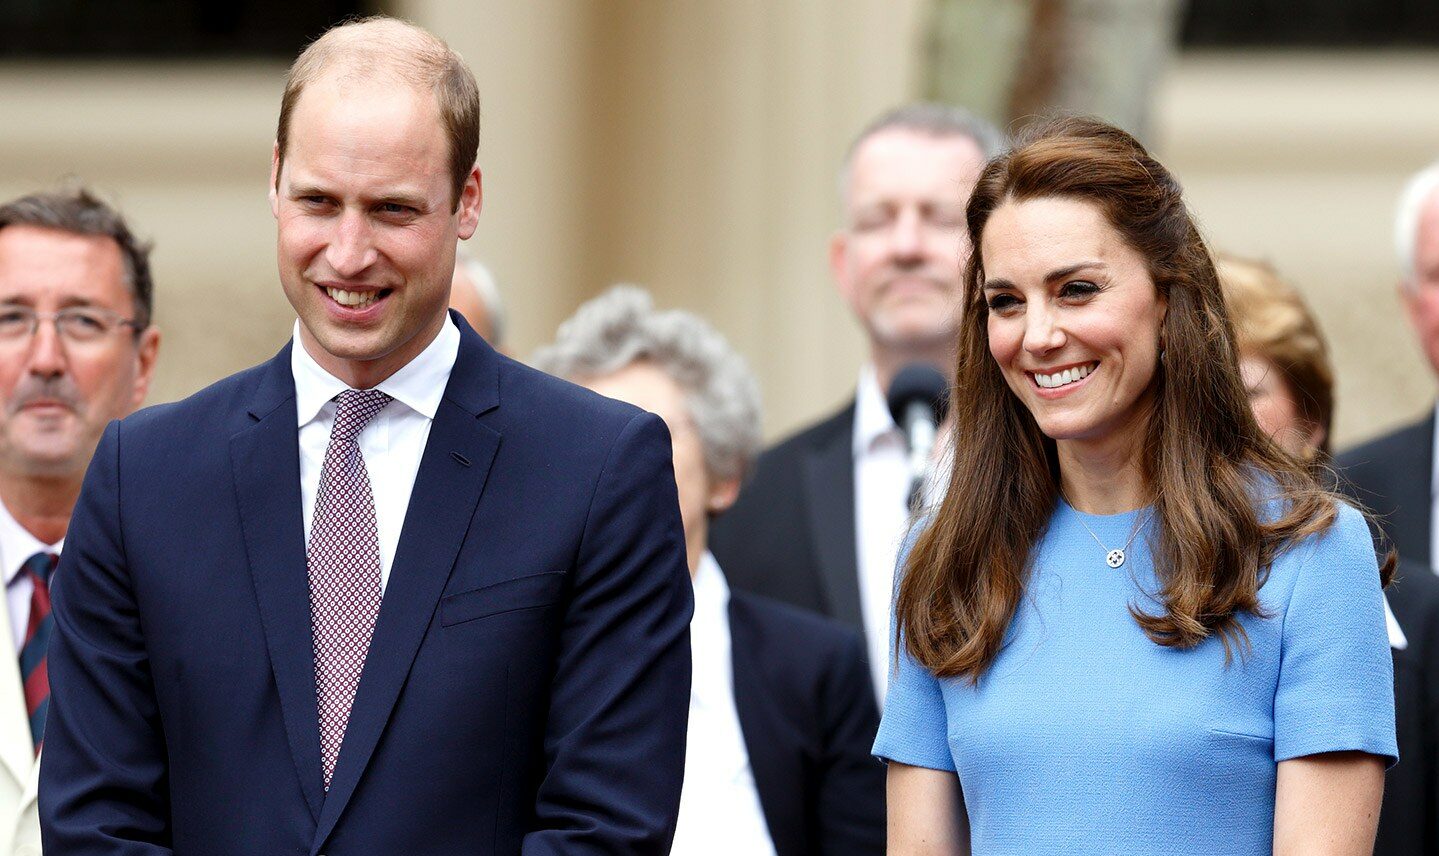 Scandale à Kensington Palace : Le prince William accusé d'avoir trompé Kate Middleton